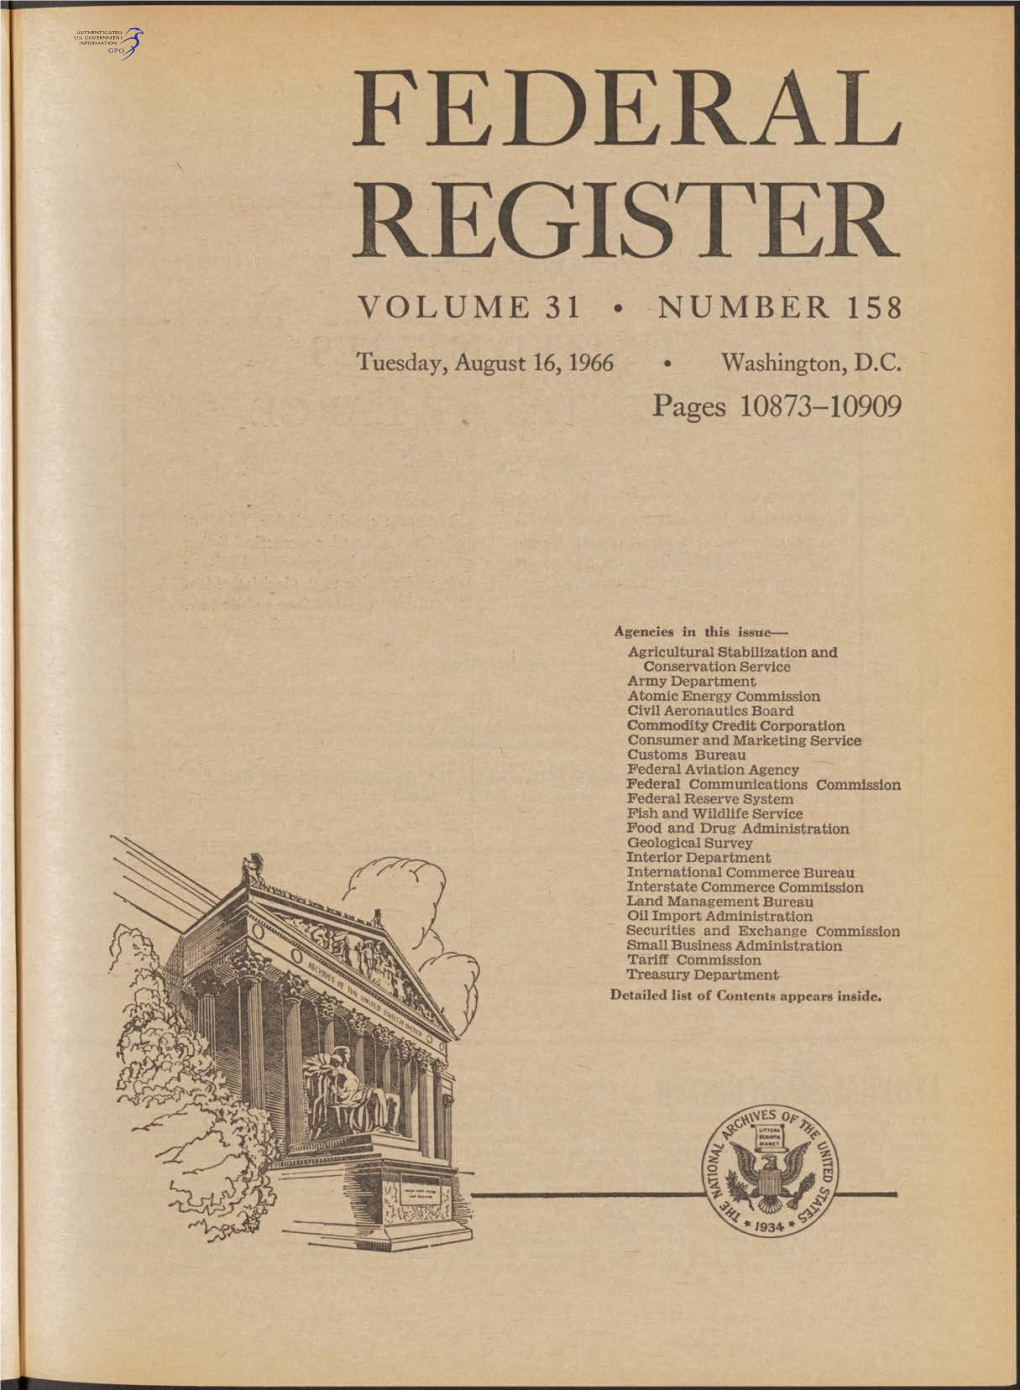 Federal Register Volume 31 • Number 158